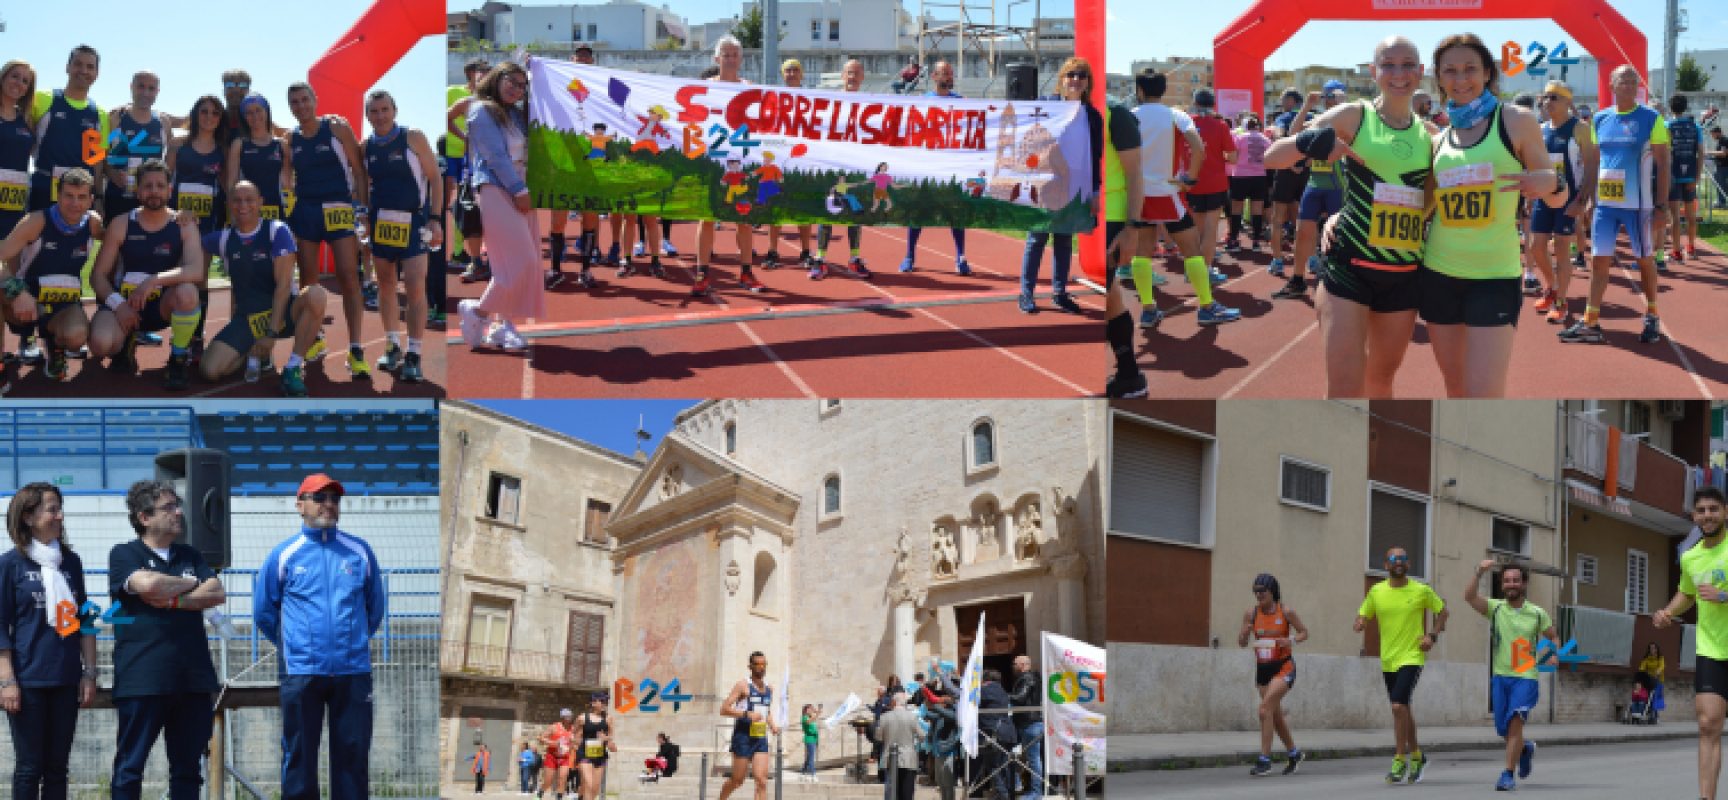 Maratona delle Cattedrali, running, benessere e solidarietà colorano Bisceglie / FOTO